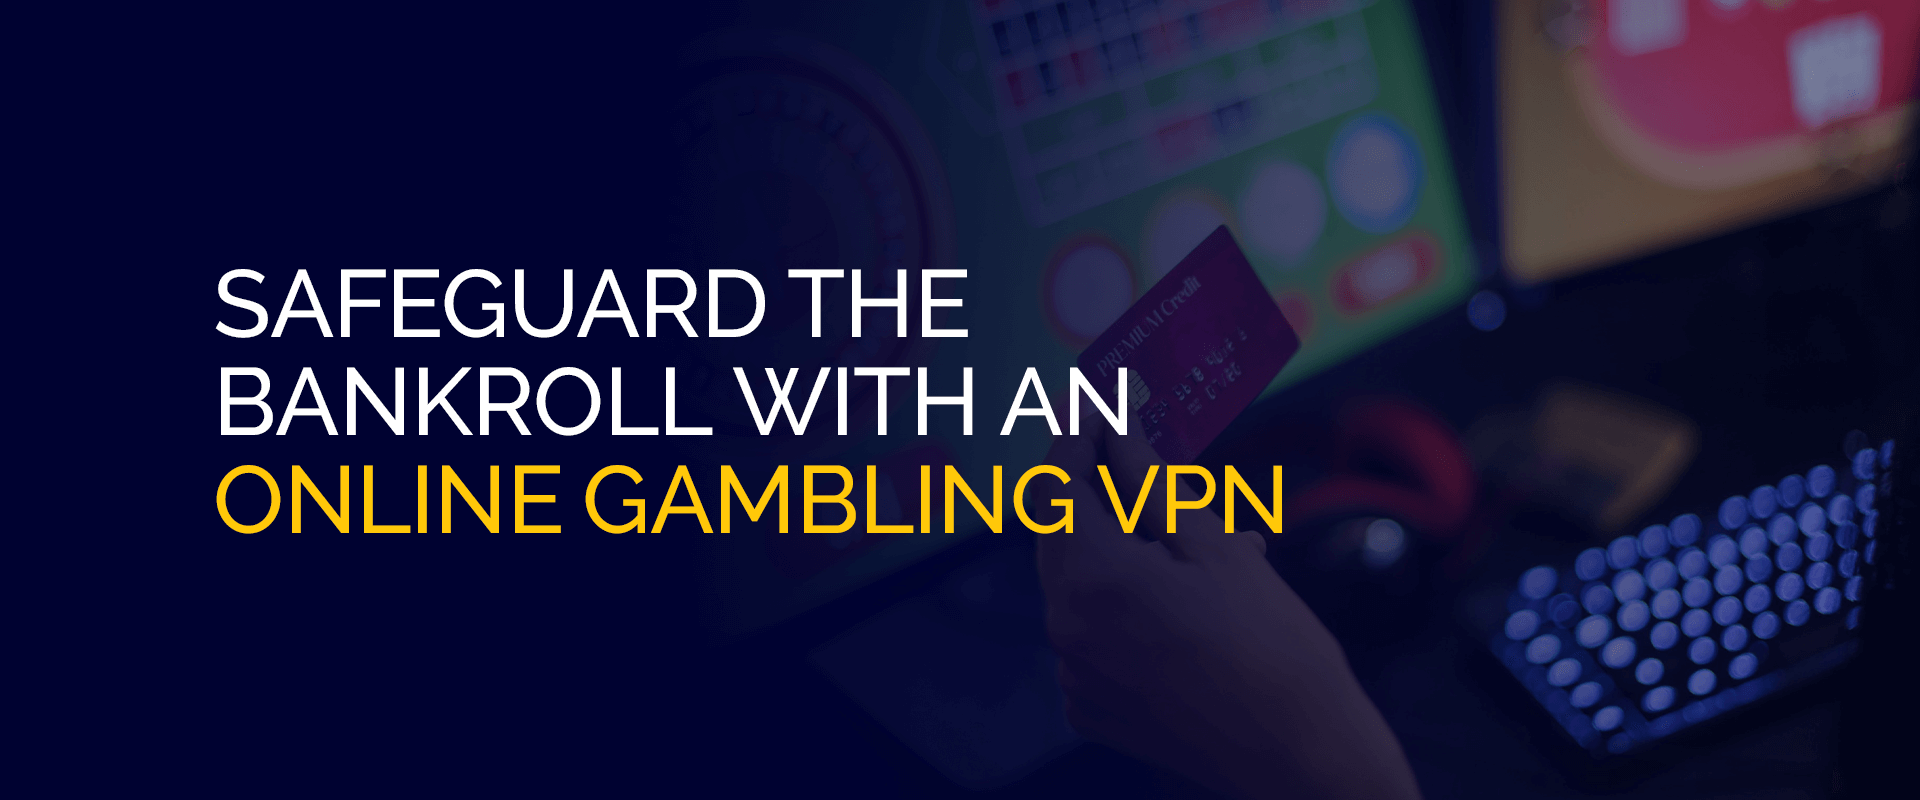 使用在线赌博 VPN 保护资金